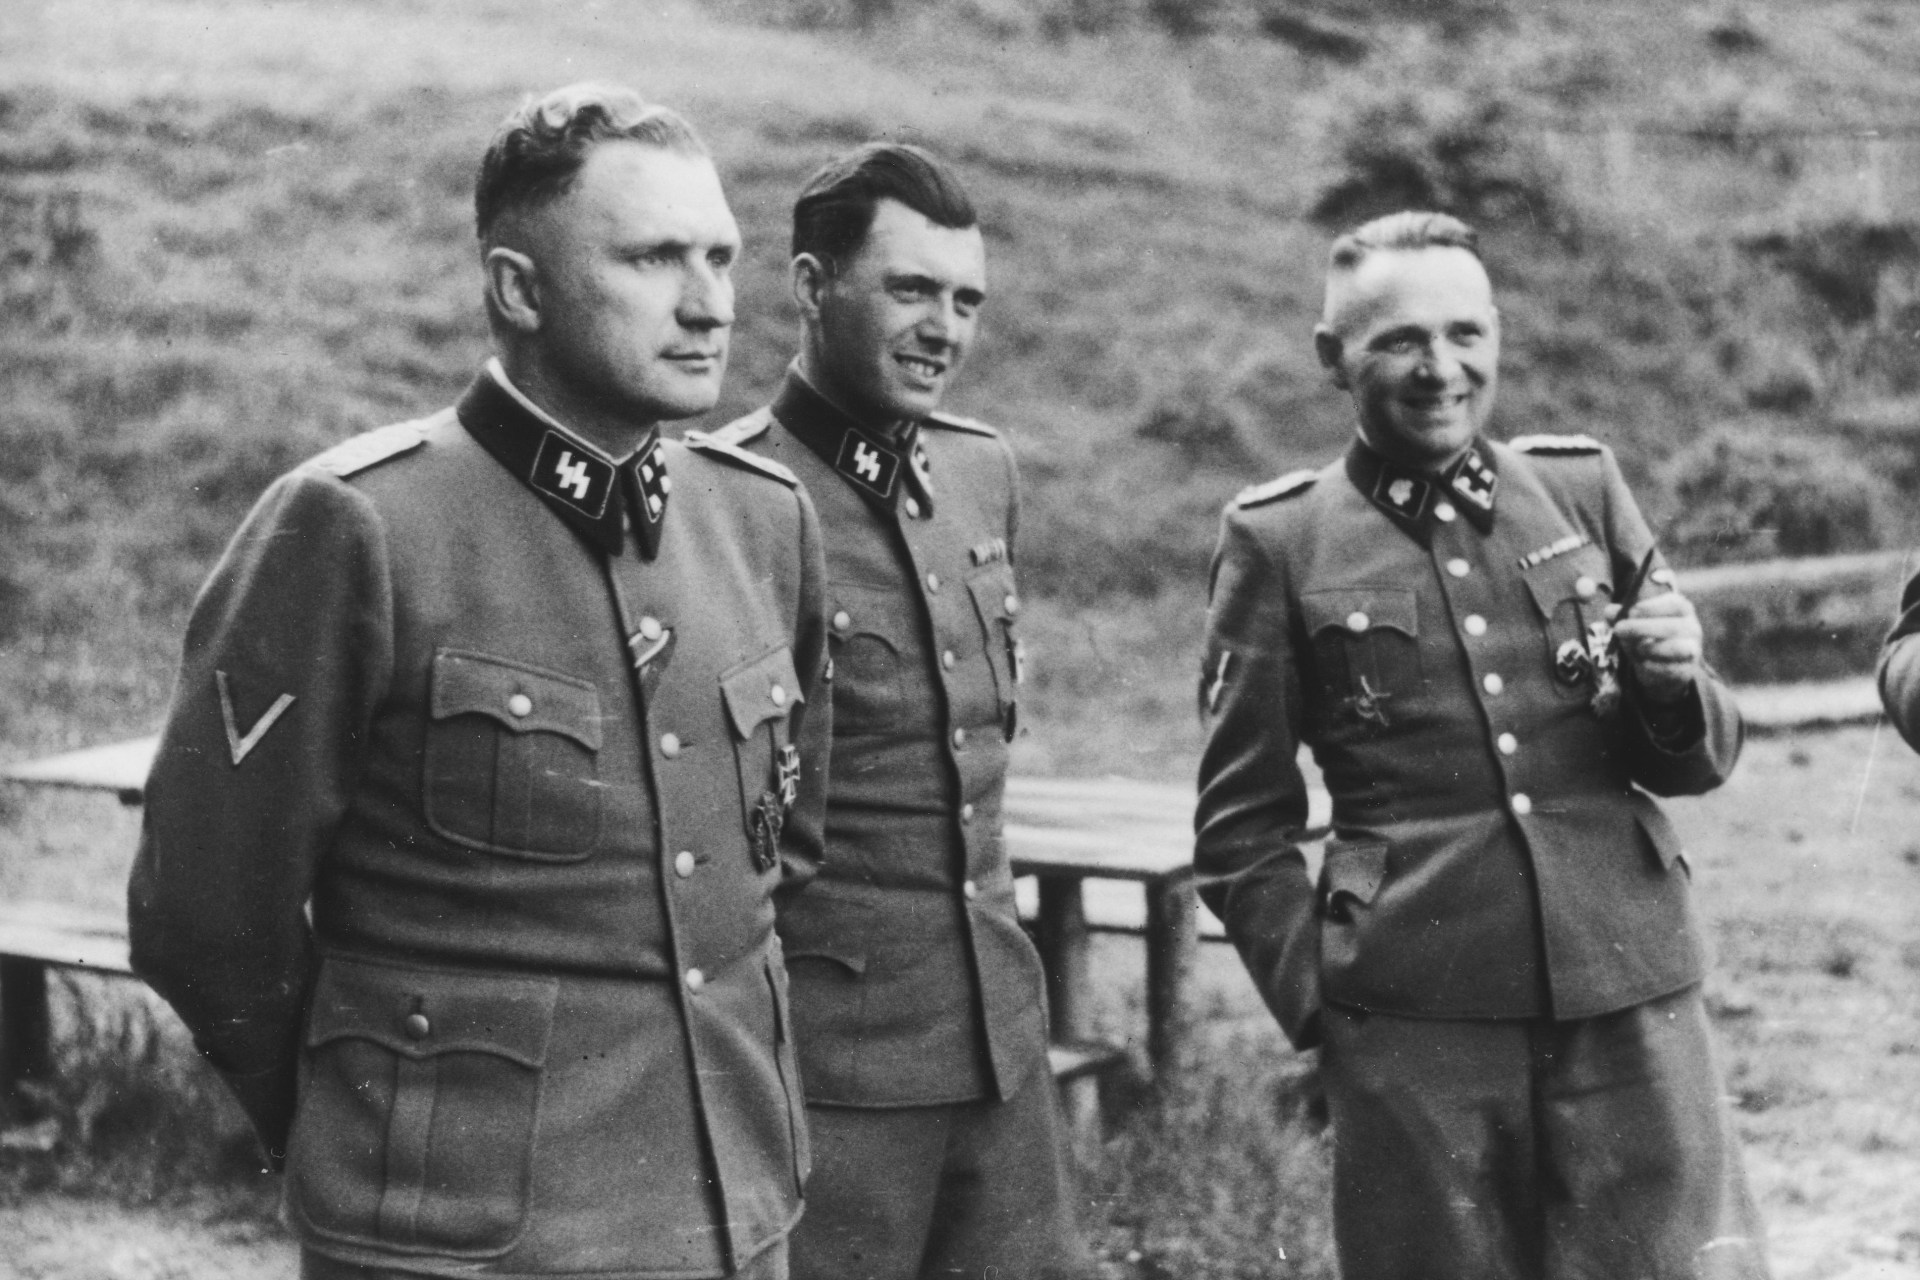 Josef Mengele Richard Baer Rudolf Hoess Auschwitz. Album Hocc88cker ?w=1920&h=1280&crop=1